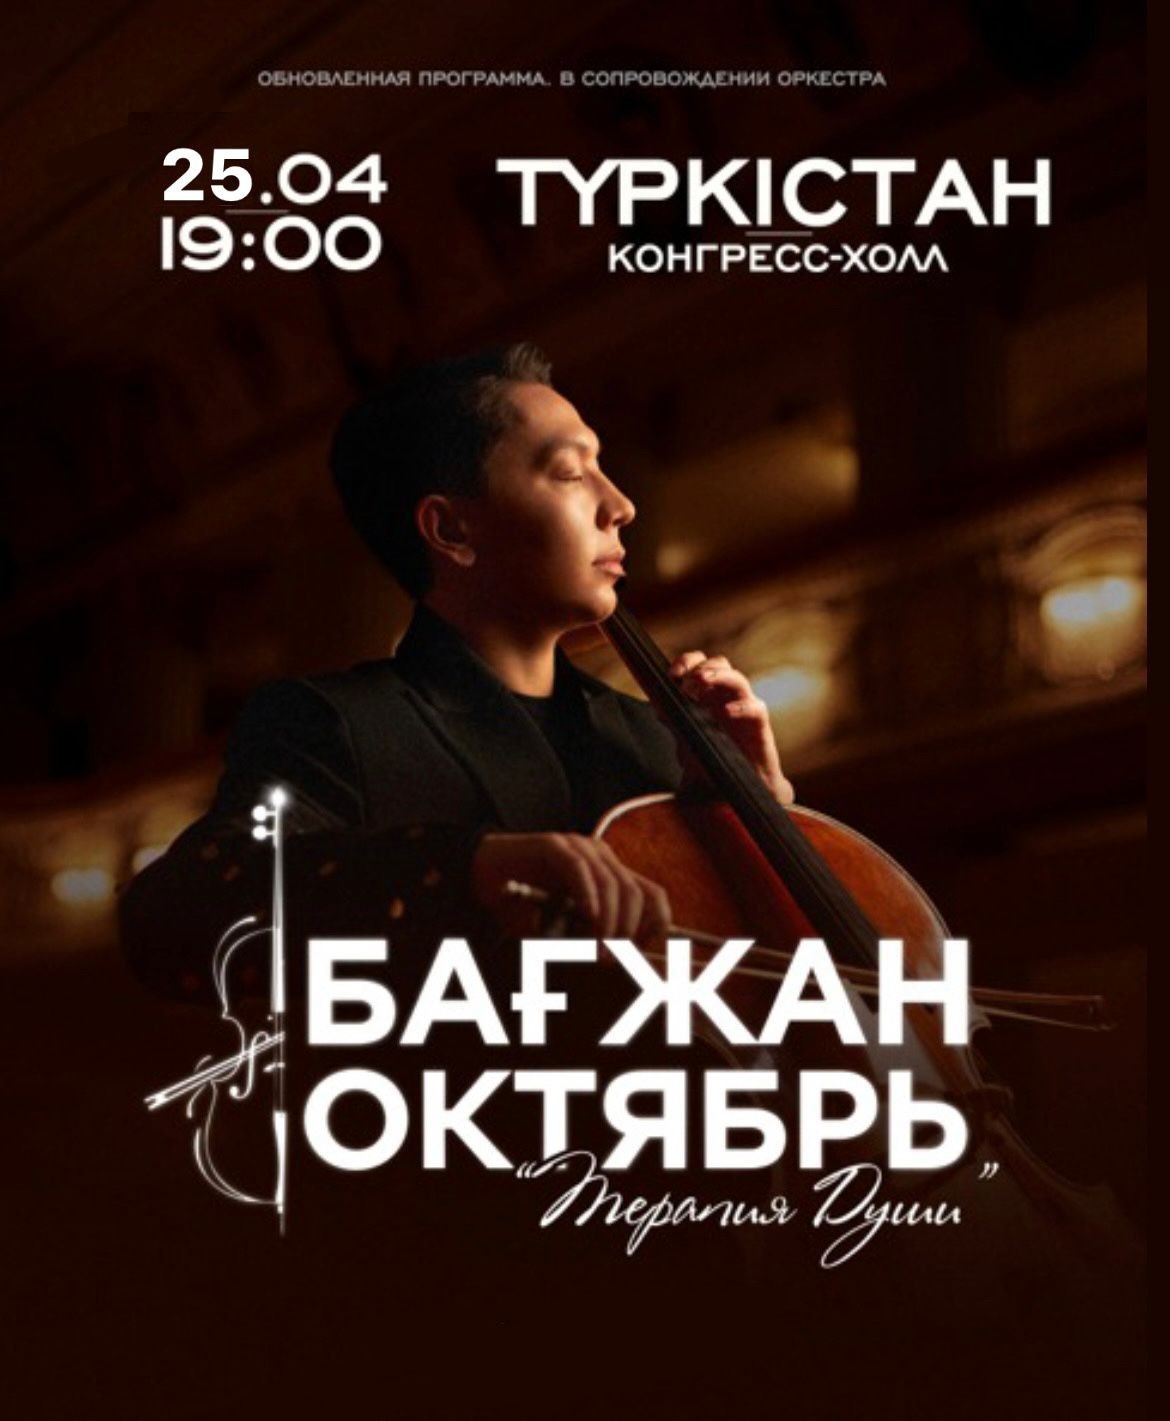 Бағжан Октябрь с концертной программой «Терапия души» в Туркестане